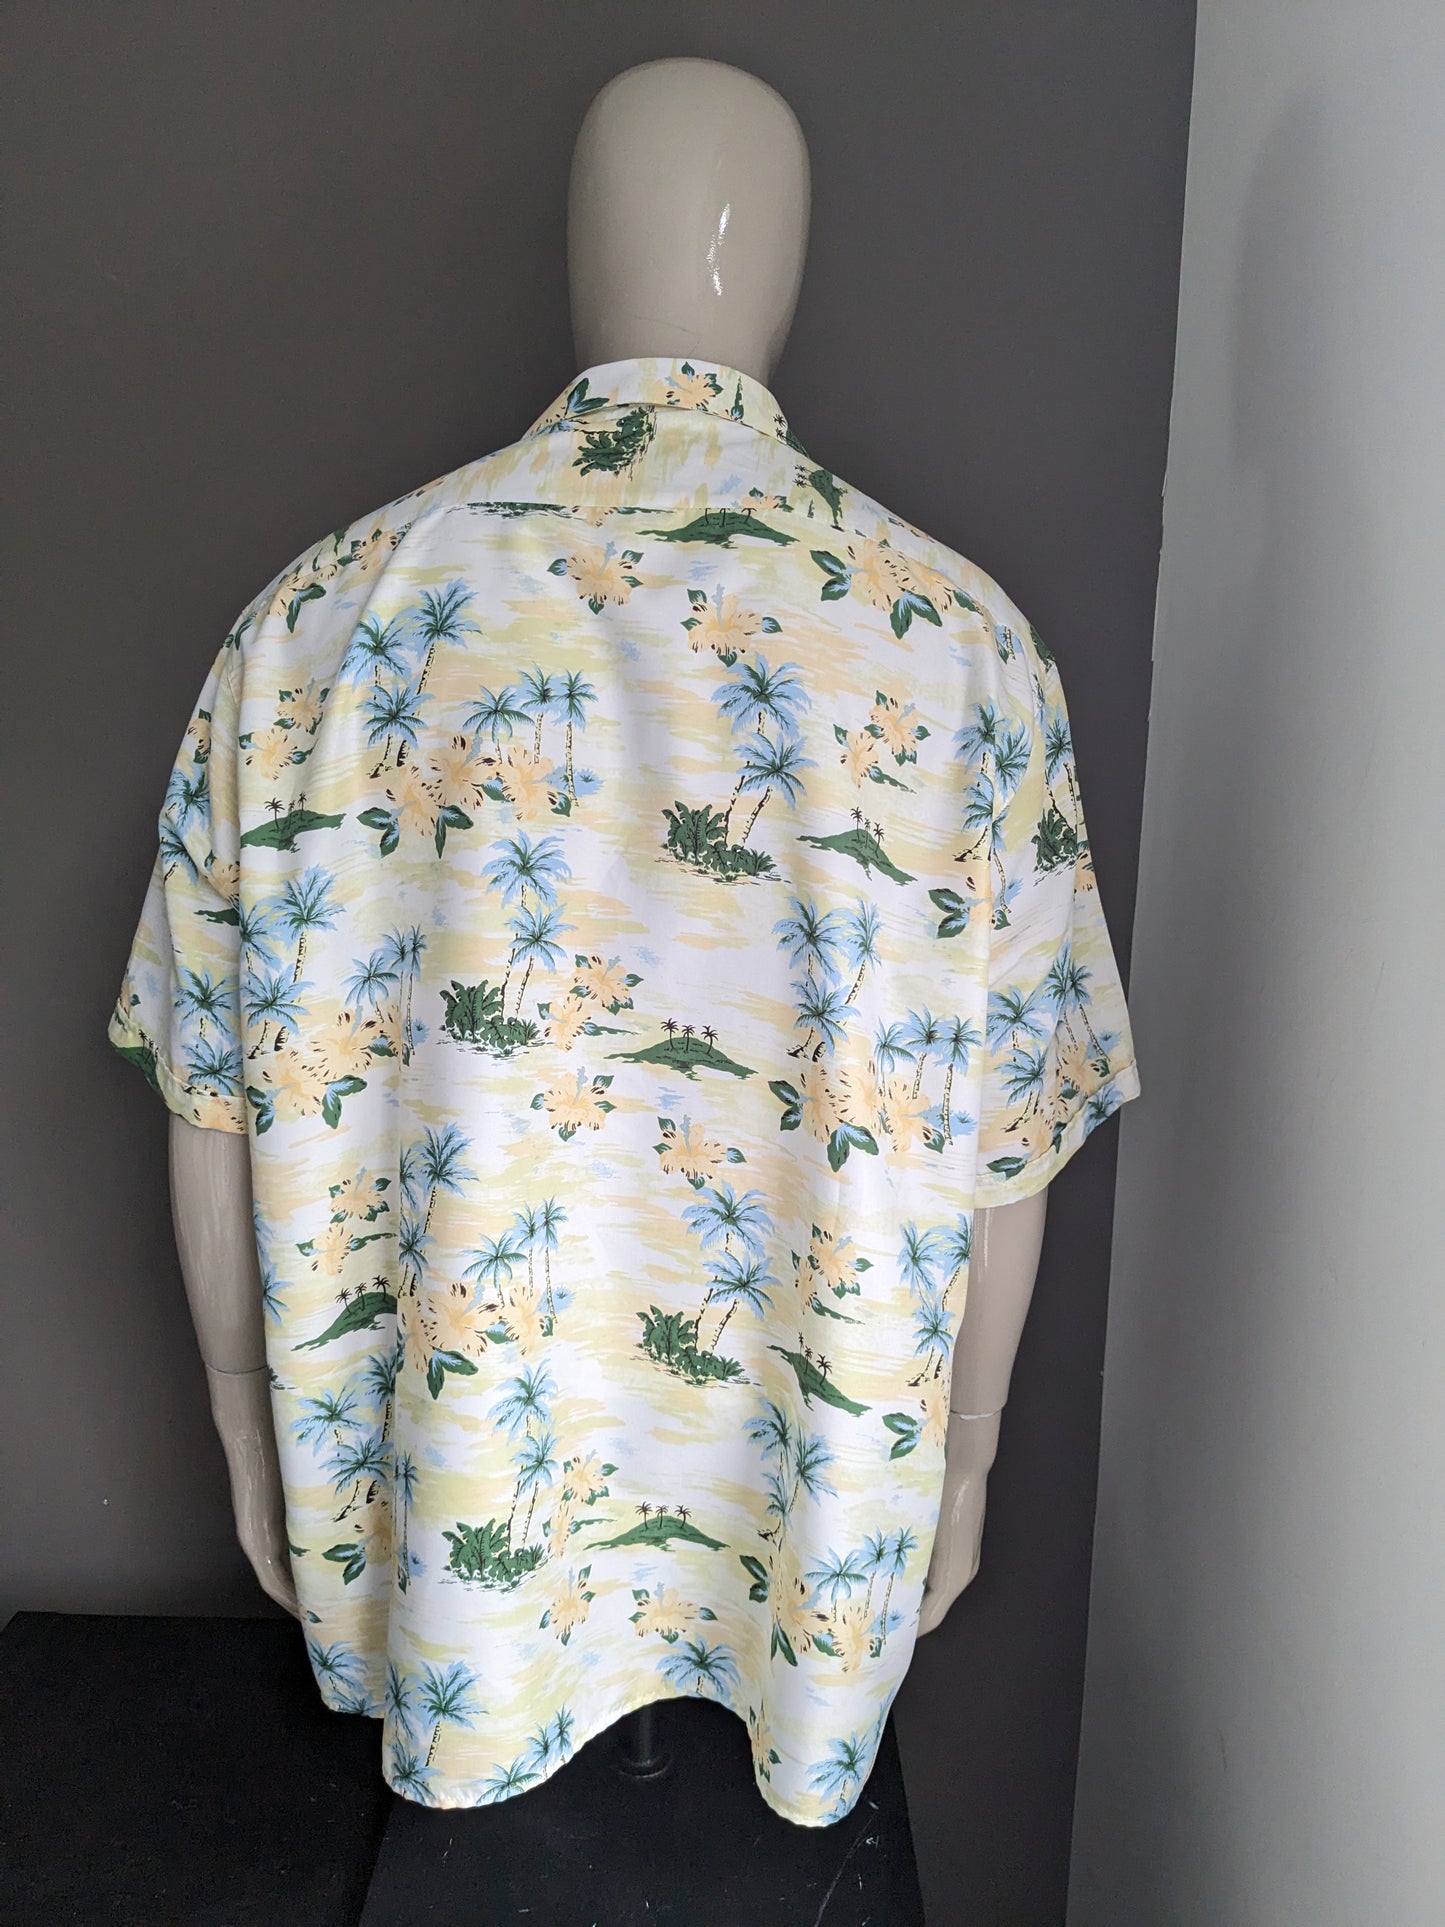 Cotton Traders Hawaii Shirt Short Sleeve. Green blue yellow print. Size 4XL / XXXXL.